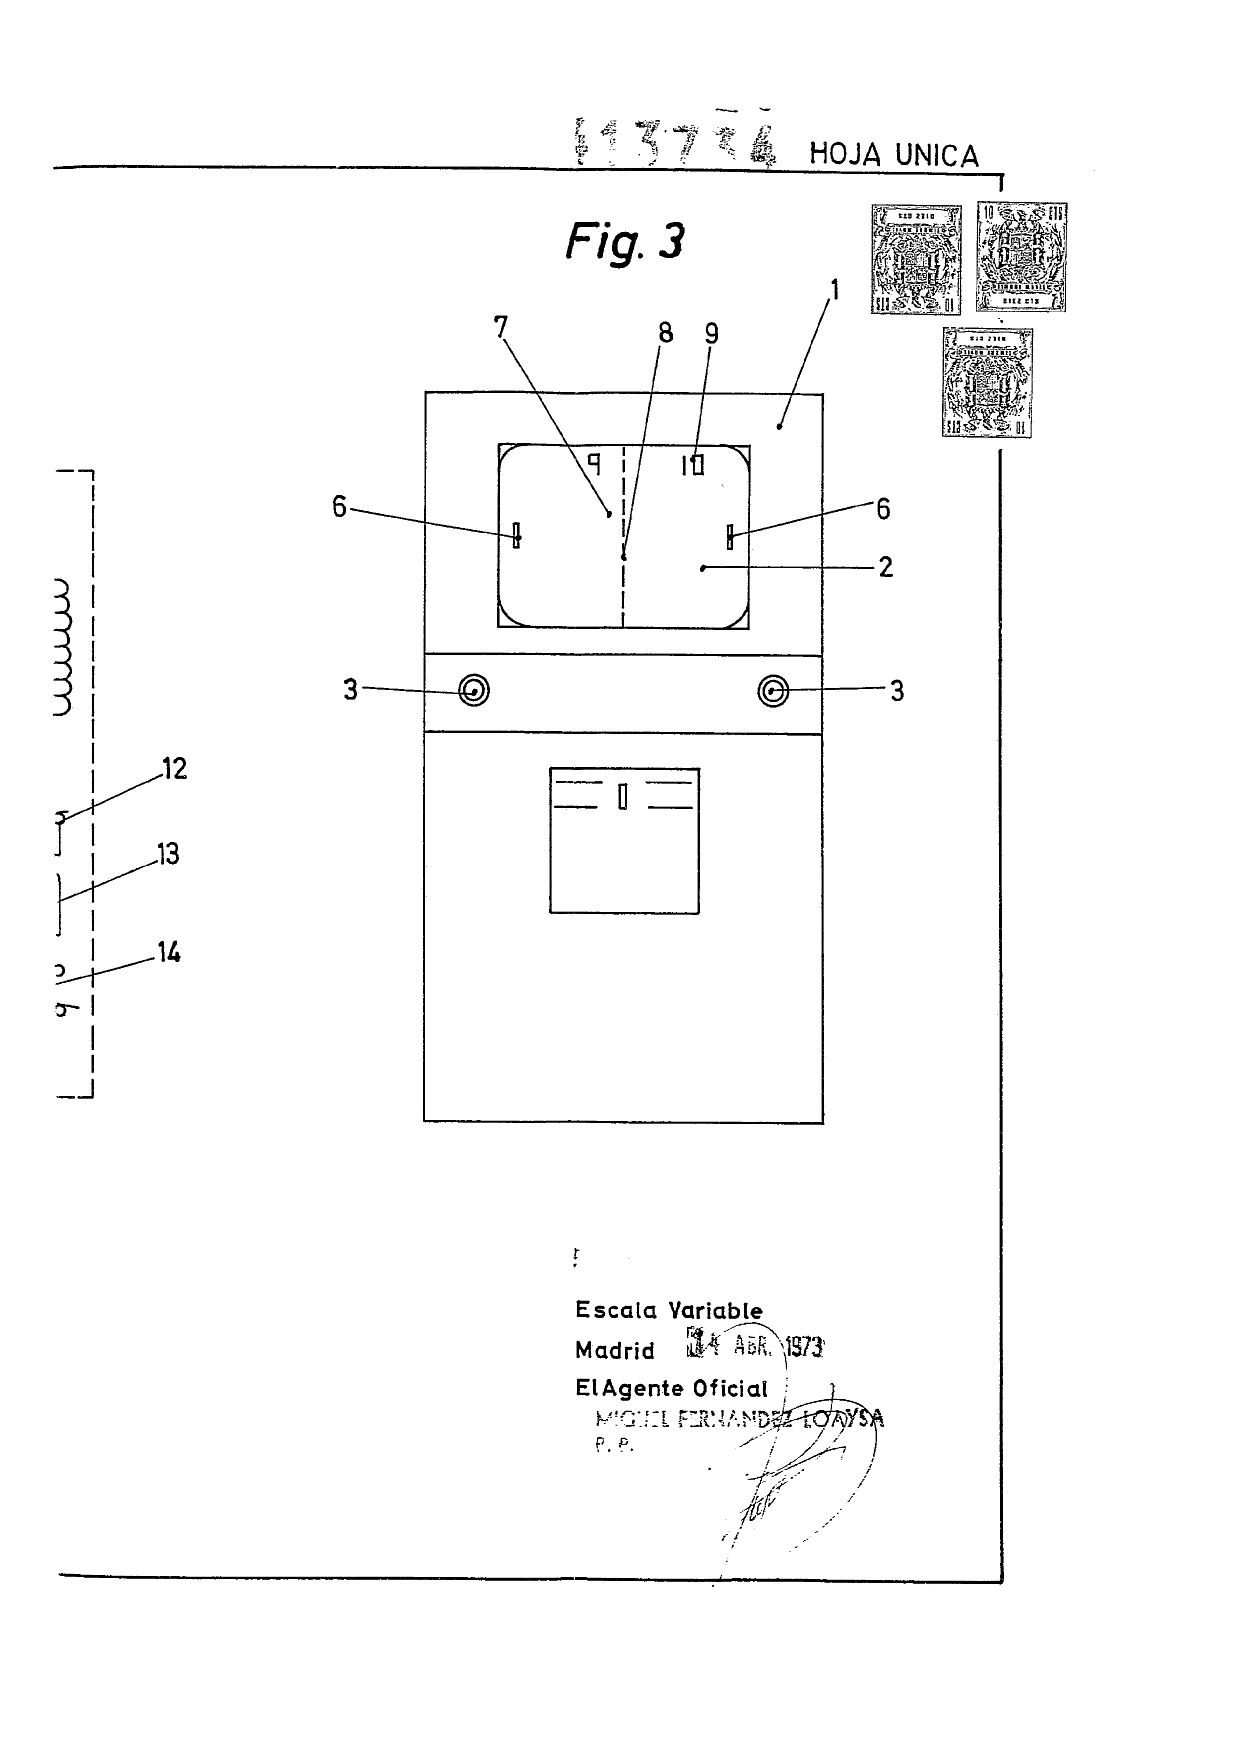 En la patente todavía figuraba el mueble similar al original de Williams Electronics. Imagen facilitada por Martín F. Martorell.